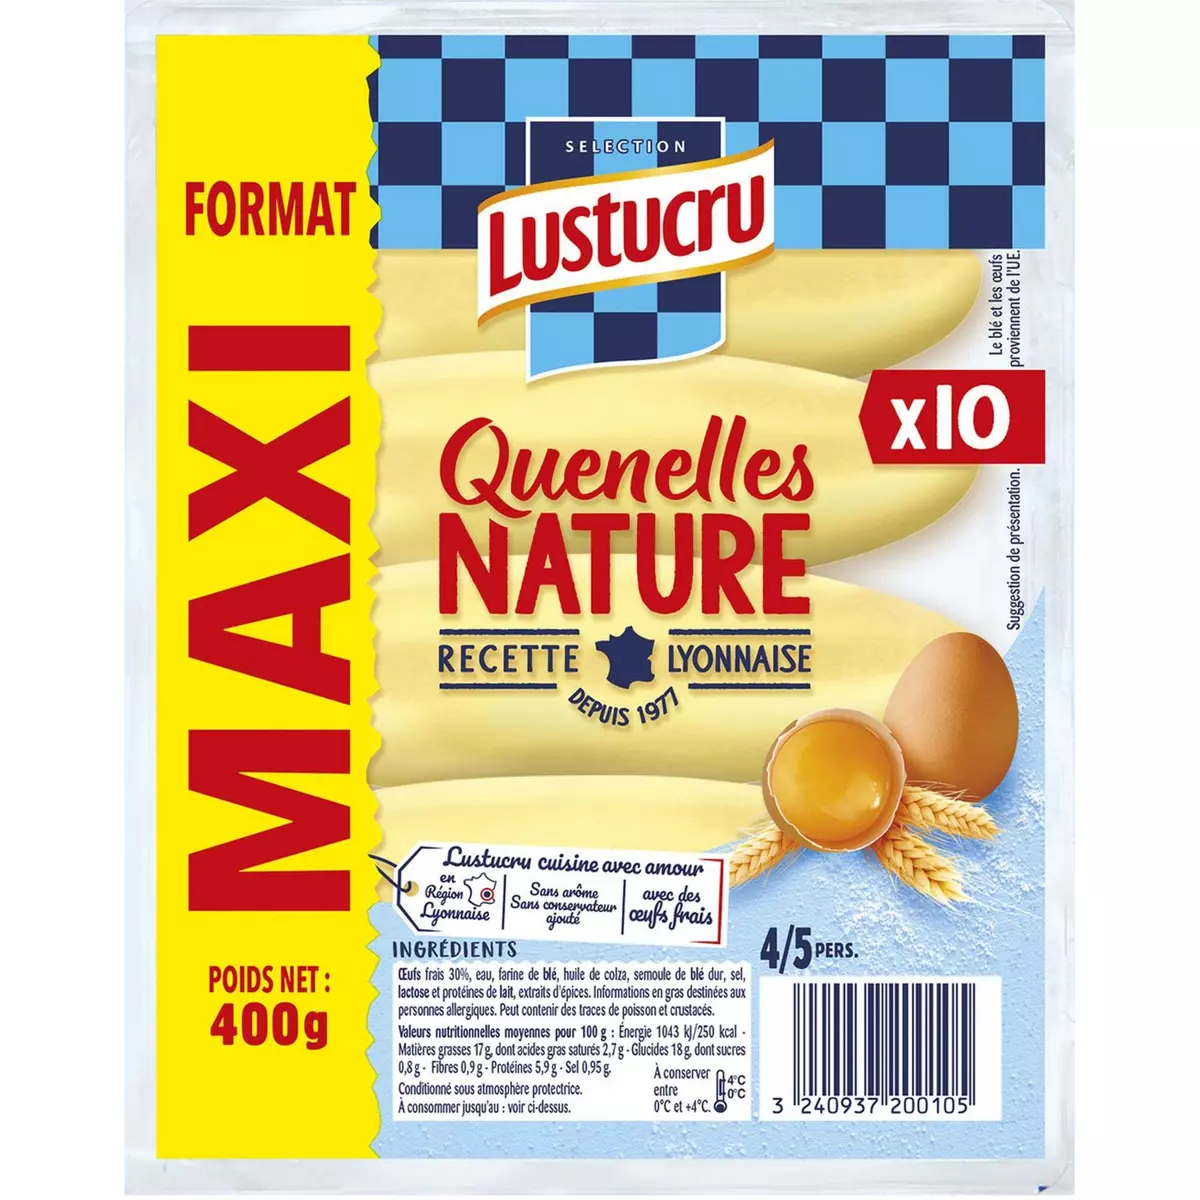 LUSTUCRU Quenelles nature sachet de 10 4-5 portions 400g